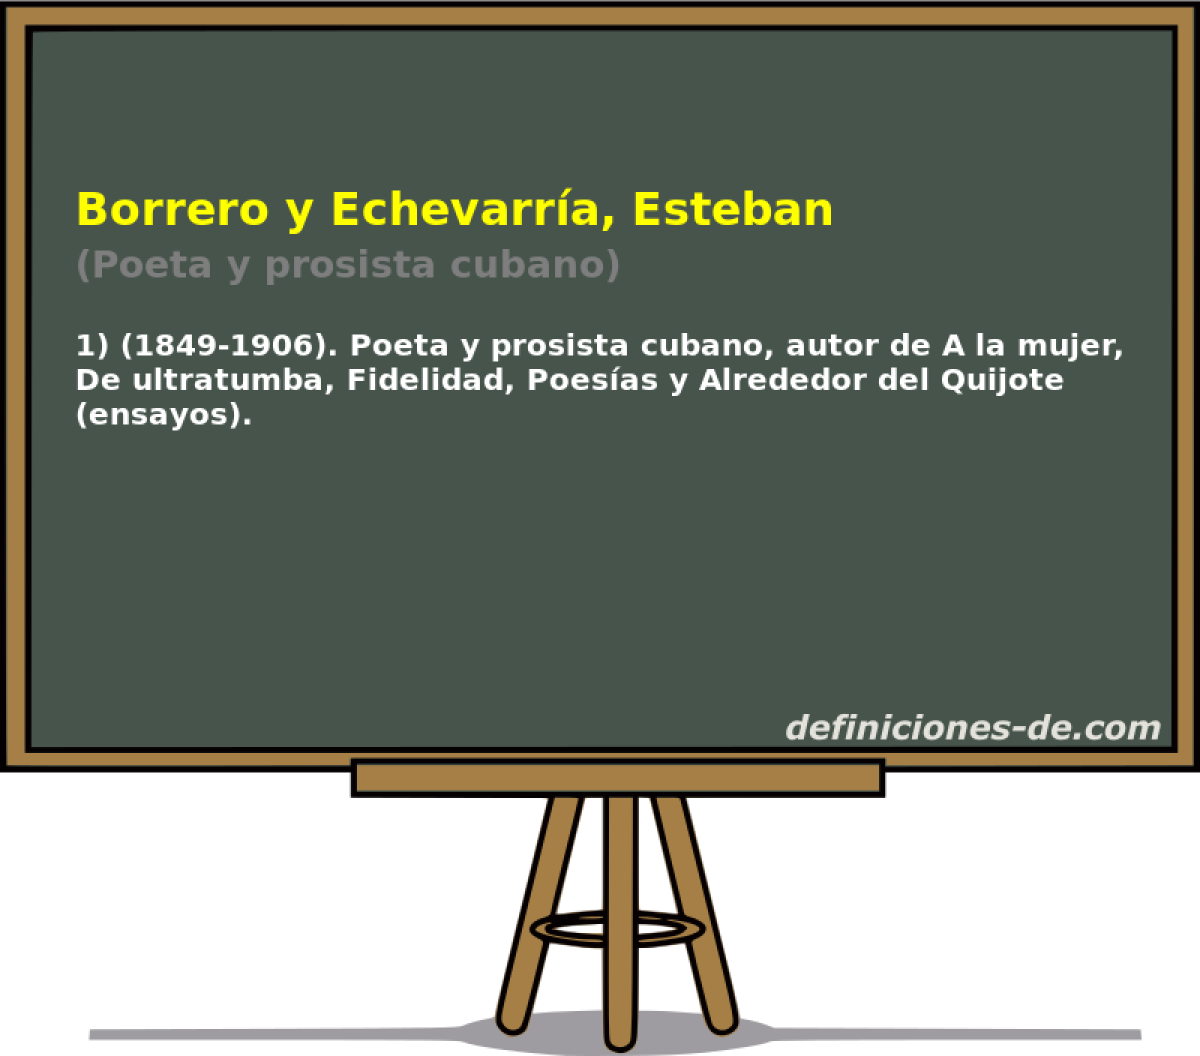 Borrero y Echevarra, Esteban (Poeta y prosista cubano)